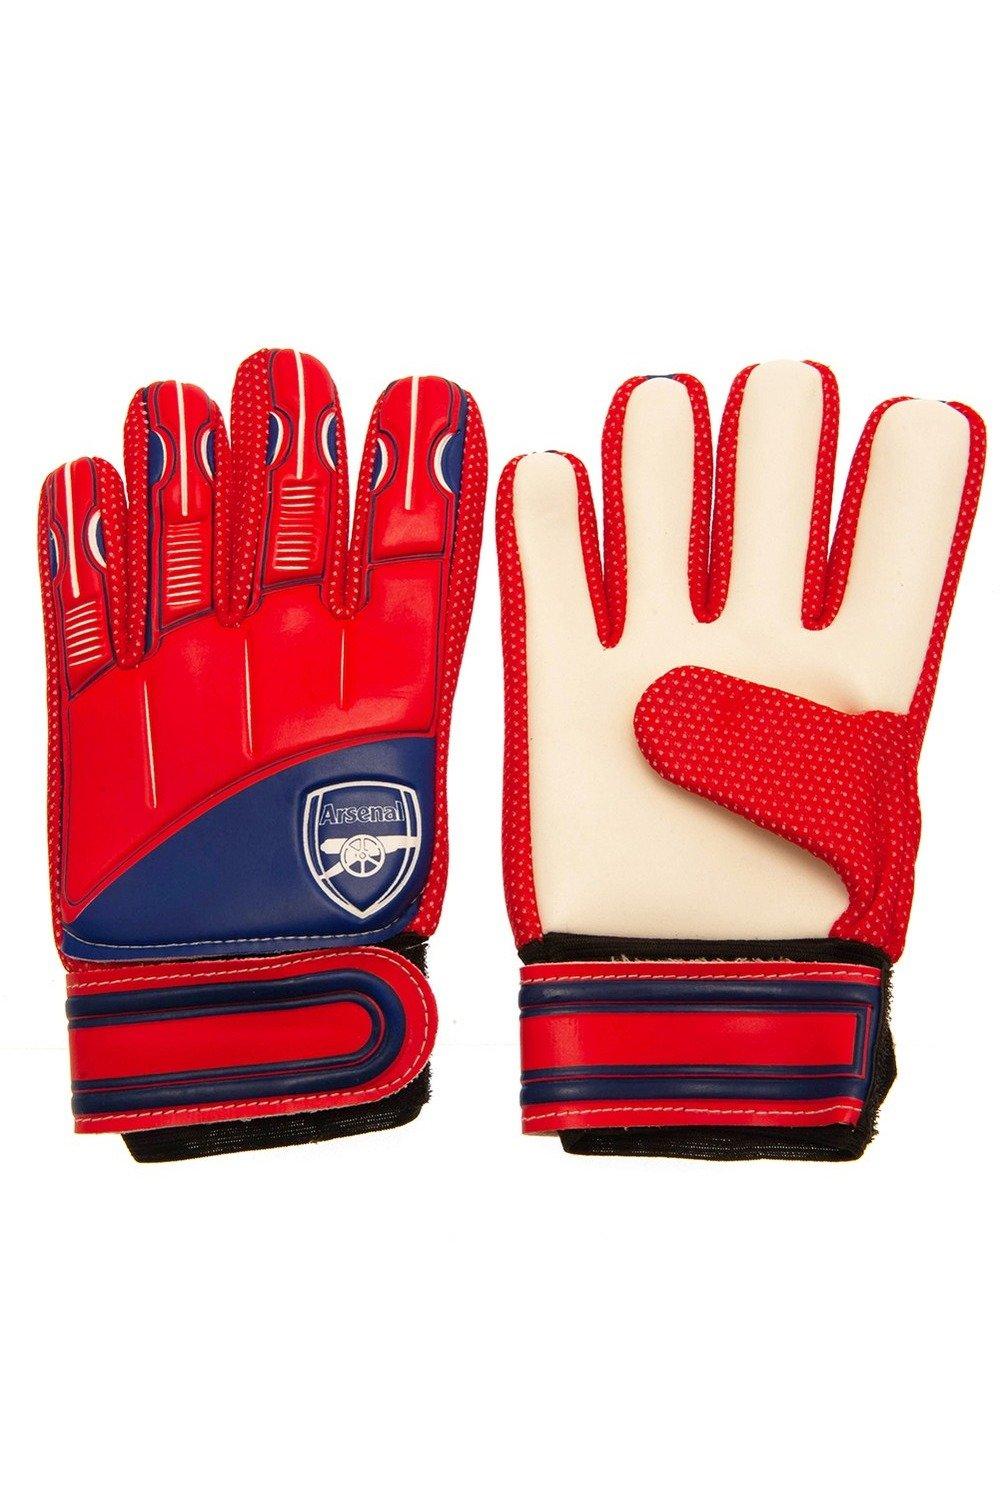 Вратарские перчатки Delta Crest Arsenal FC, красный перчатки вратарские demix красный